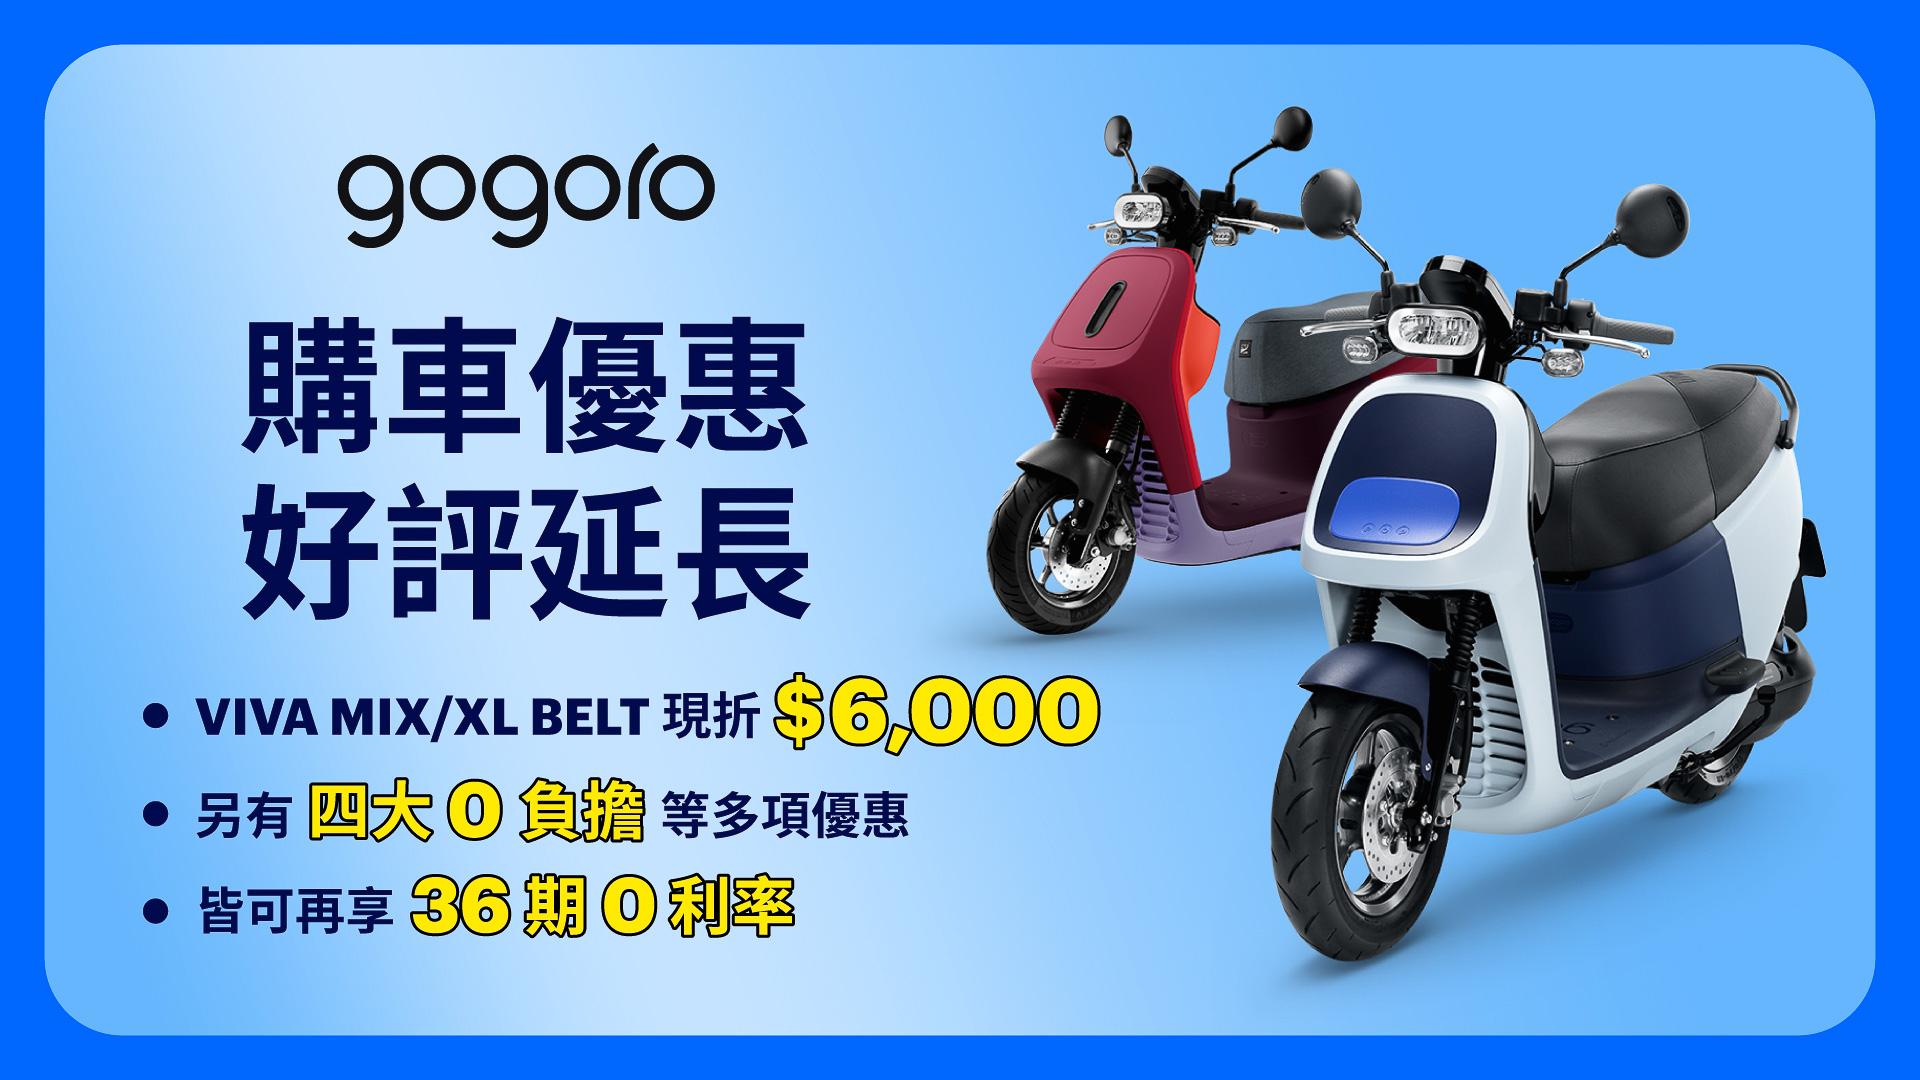 ▲ Gogoro VIVA 車系慶祝銷售訂單倍增 即日起指定熱銷車享 $ 6,000 折扣